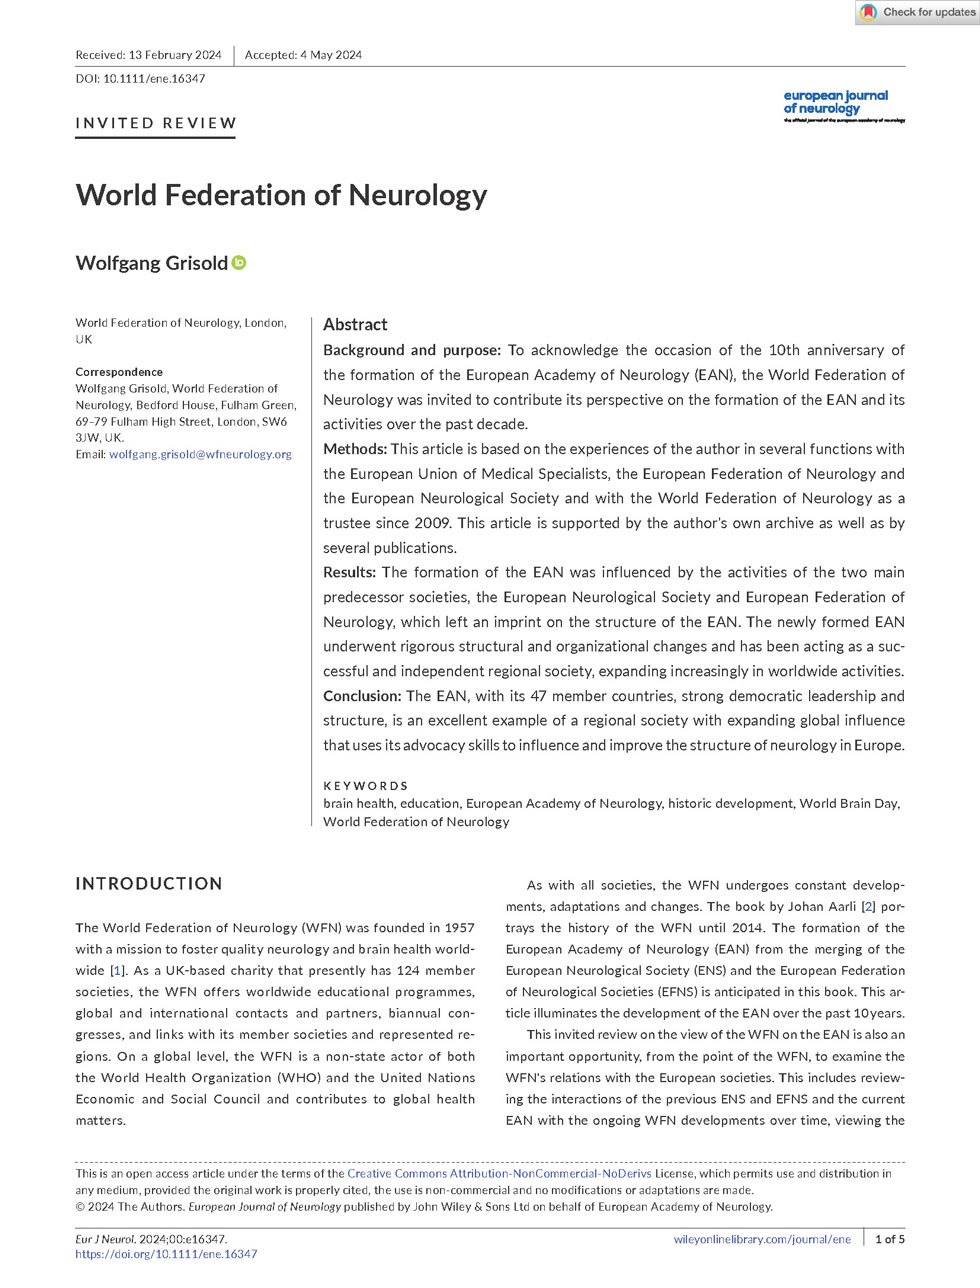 Euro J of Neurology June 2024 Grisold World Federation of Neurology